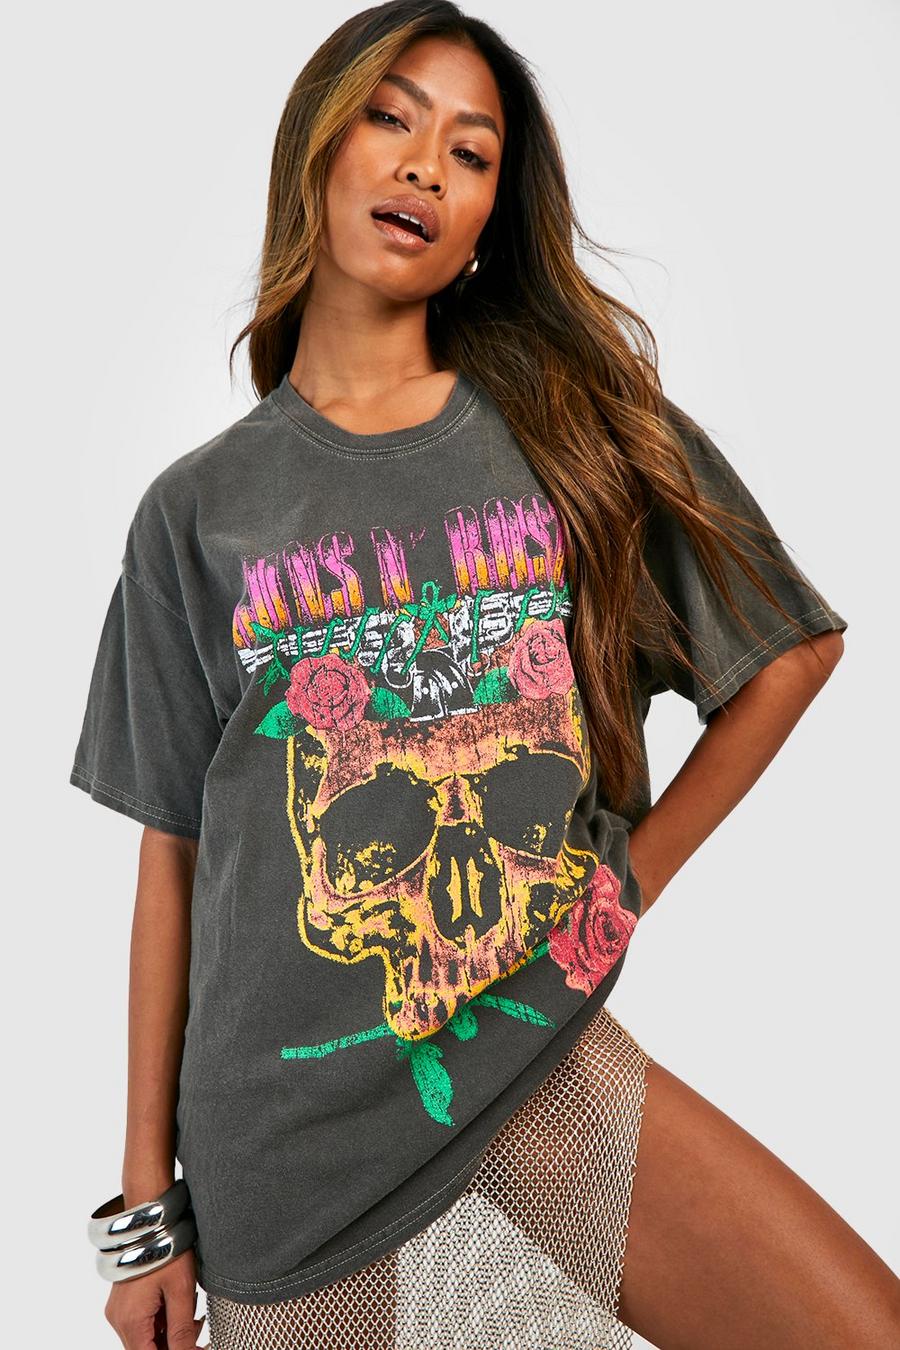 Black Guns N Roses Festival Band T-shirt